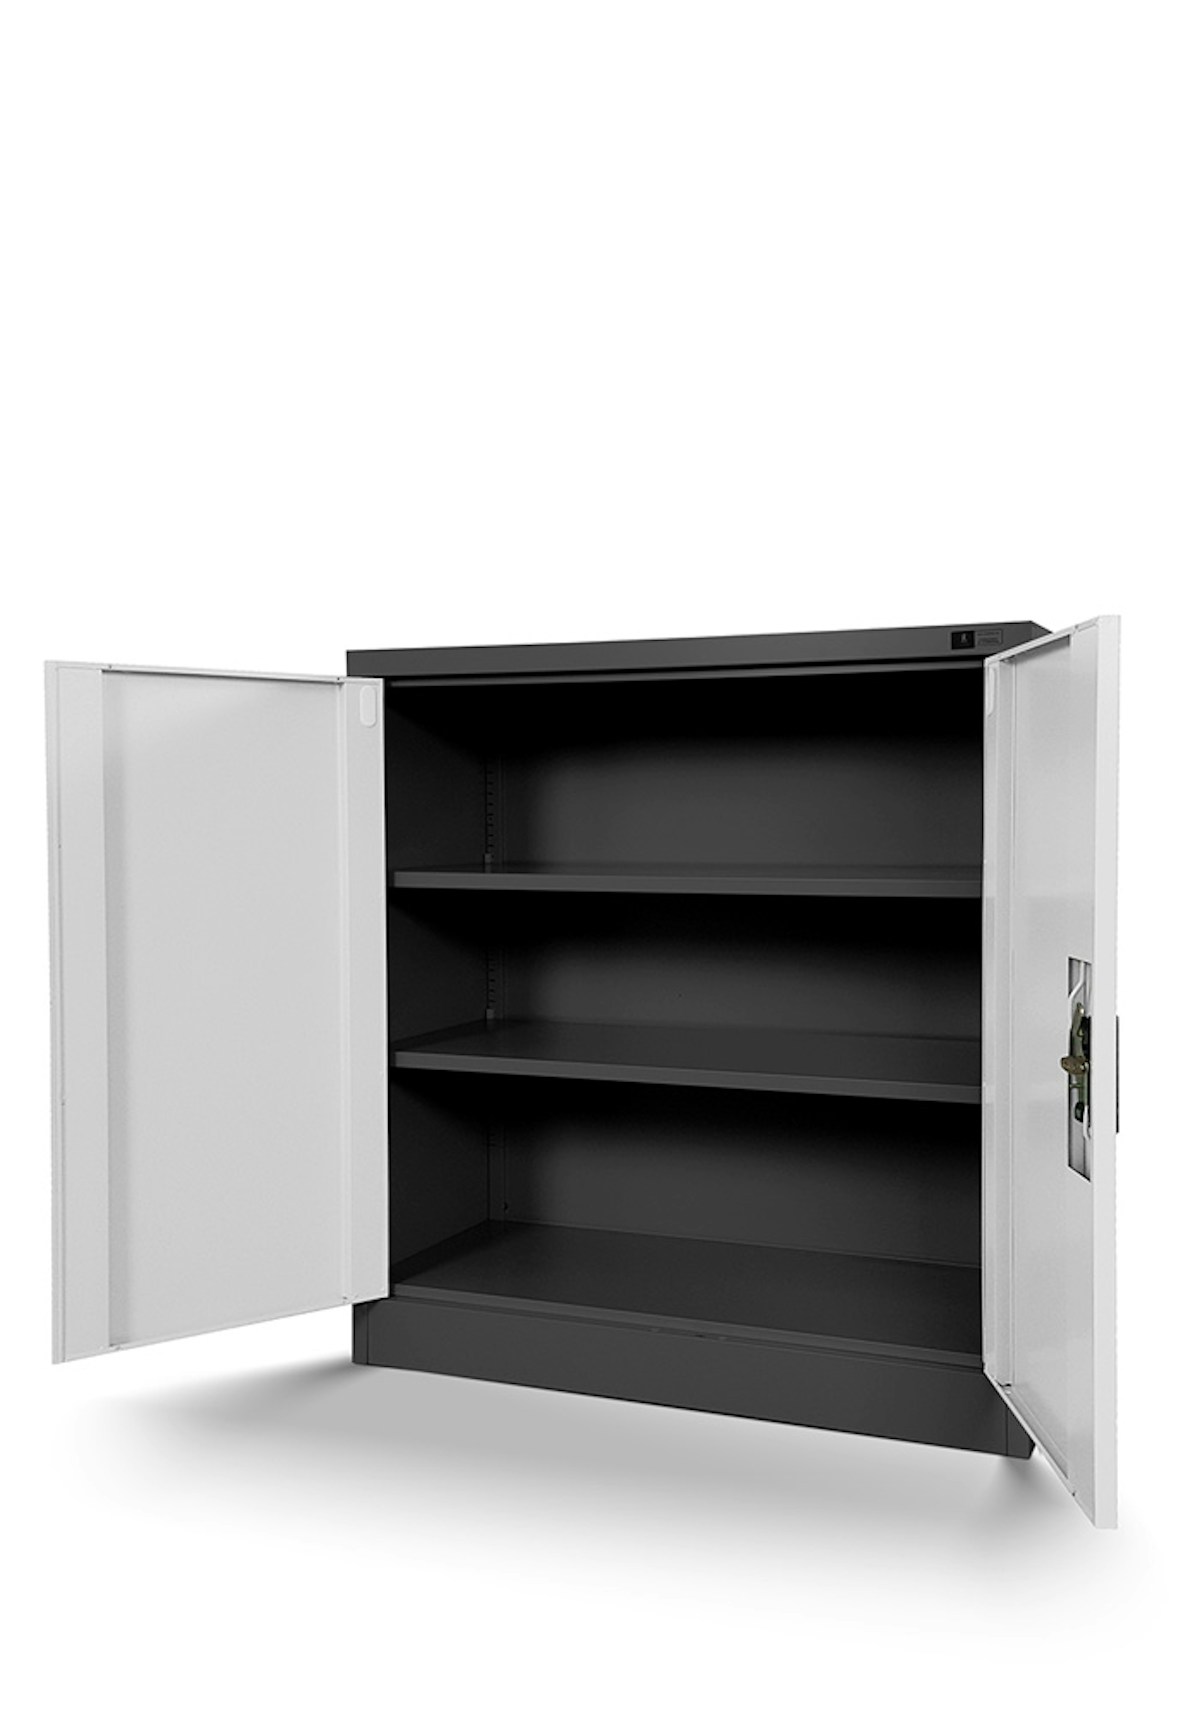 JAN NOWAK model BEATA metalowa szafka z drzwiami: antracytowo-biała